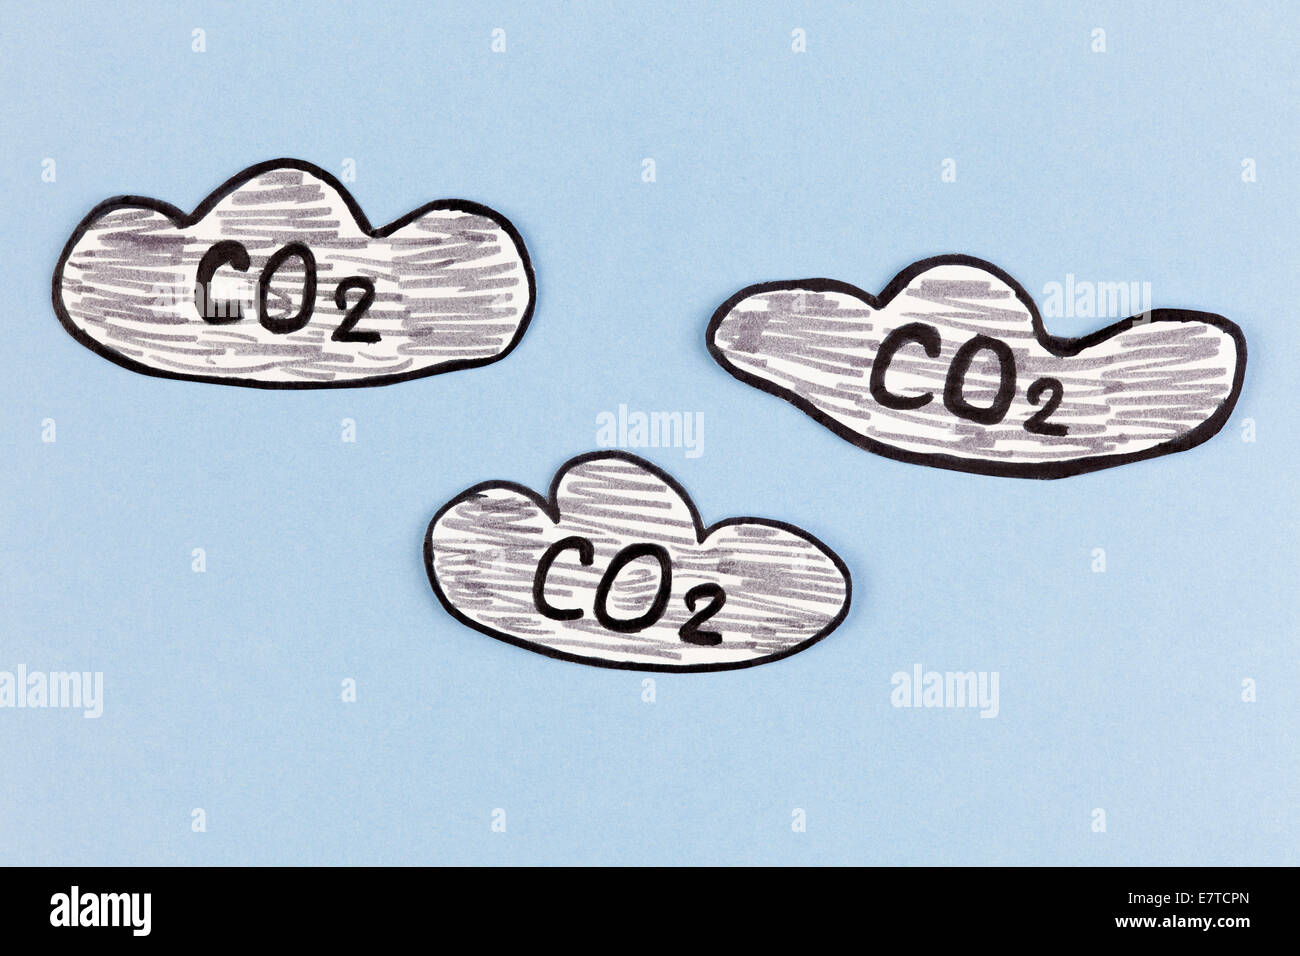 Il biossido di carbonio nuvole (CO2). Immagine è stata disegnata a mano e il taglio della carta-fuori da me. Foto Stock